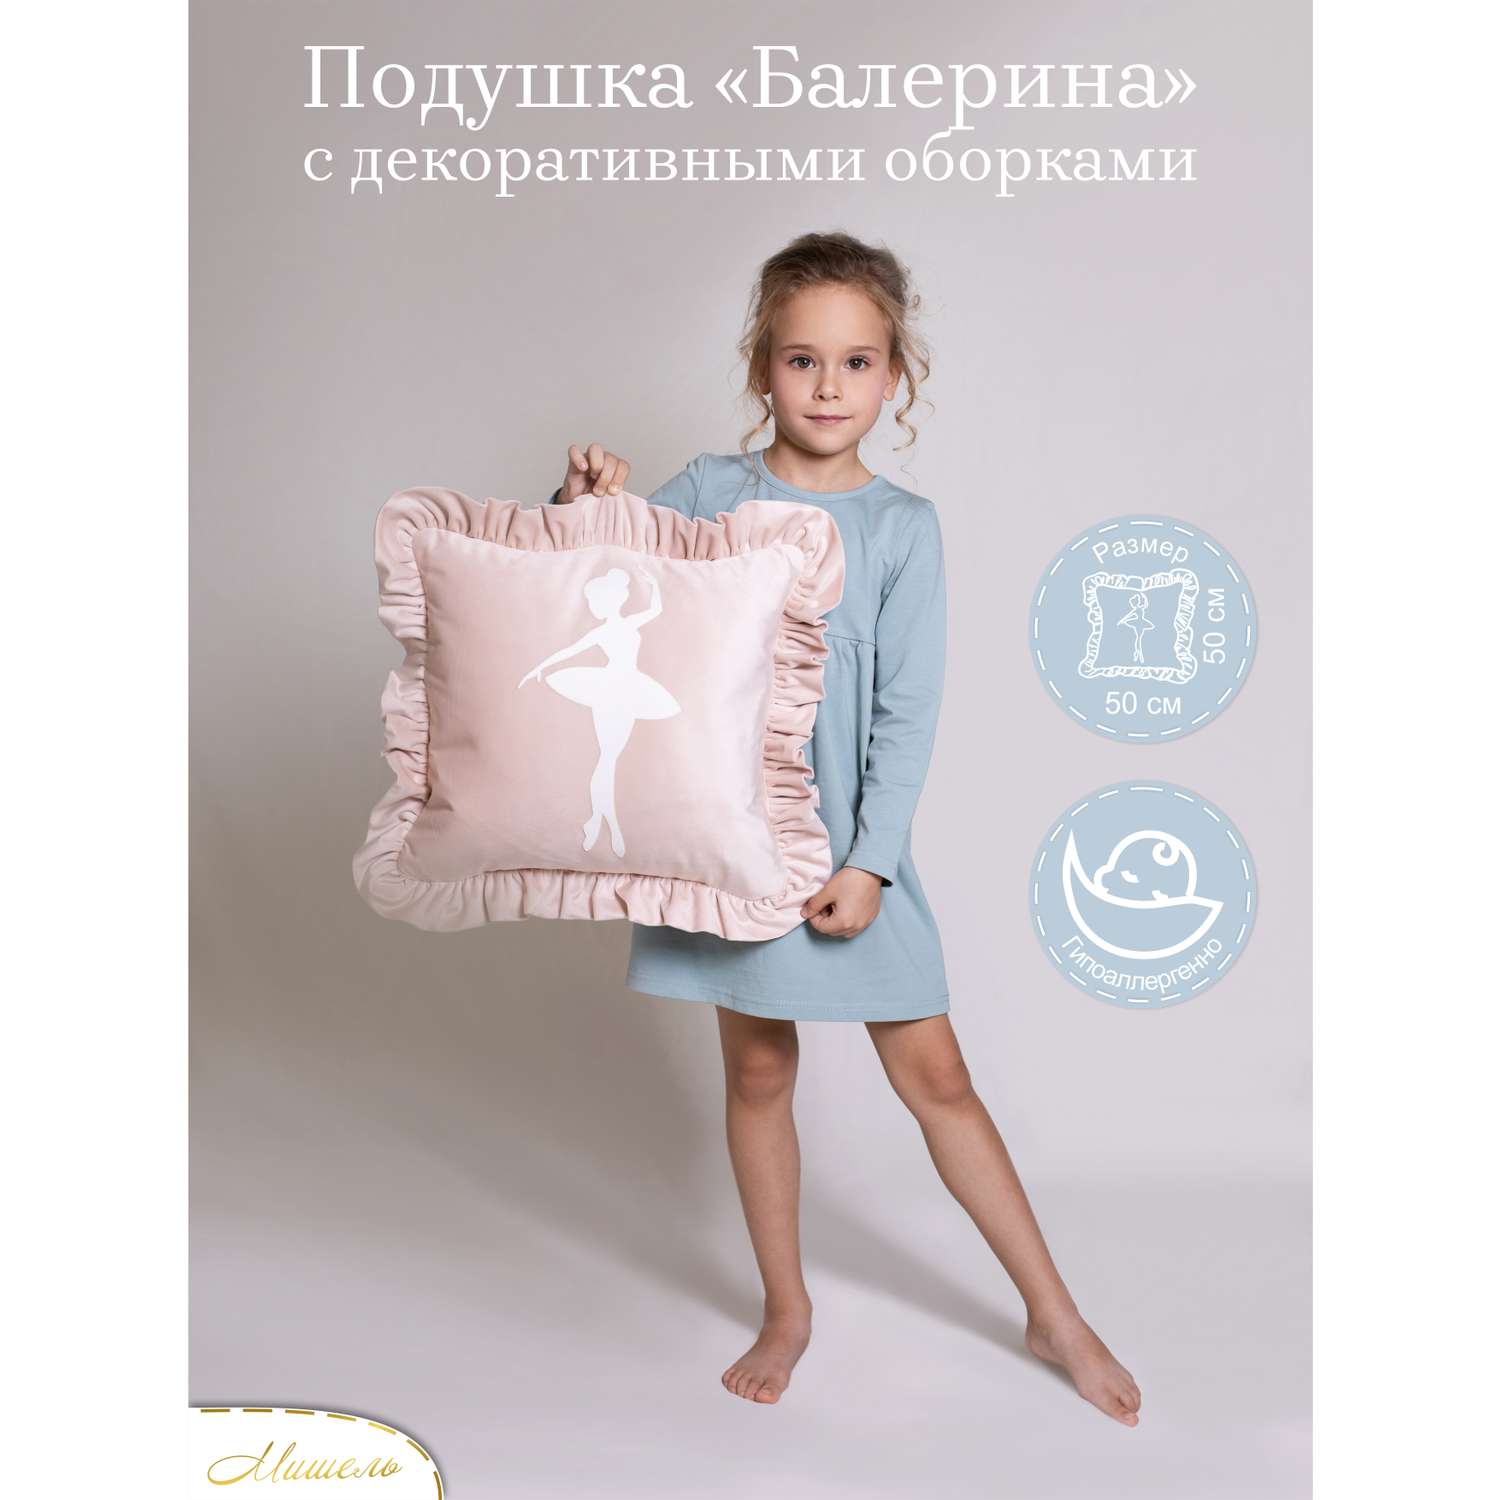 Подушка декоративная детская Мишель Балерина цвет розовая пудра - фото 1